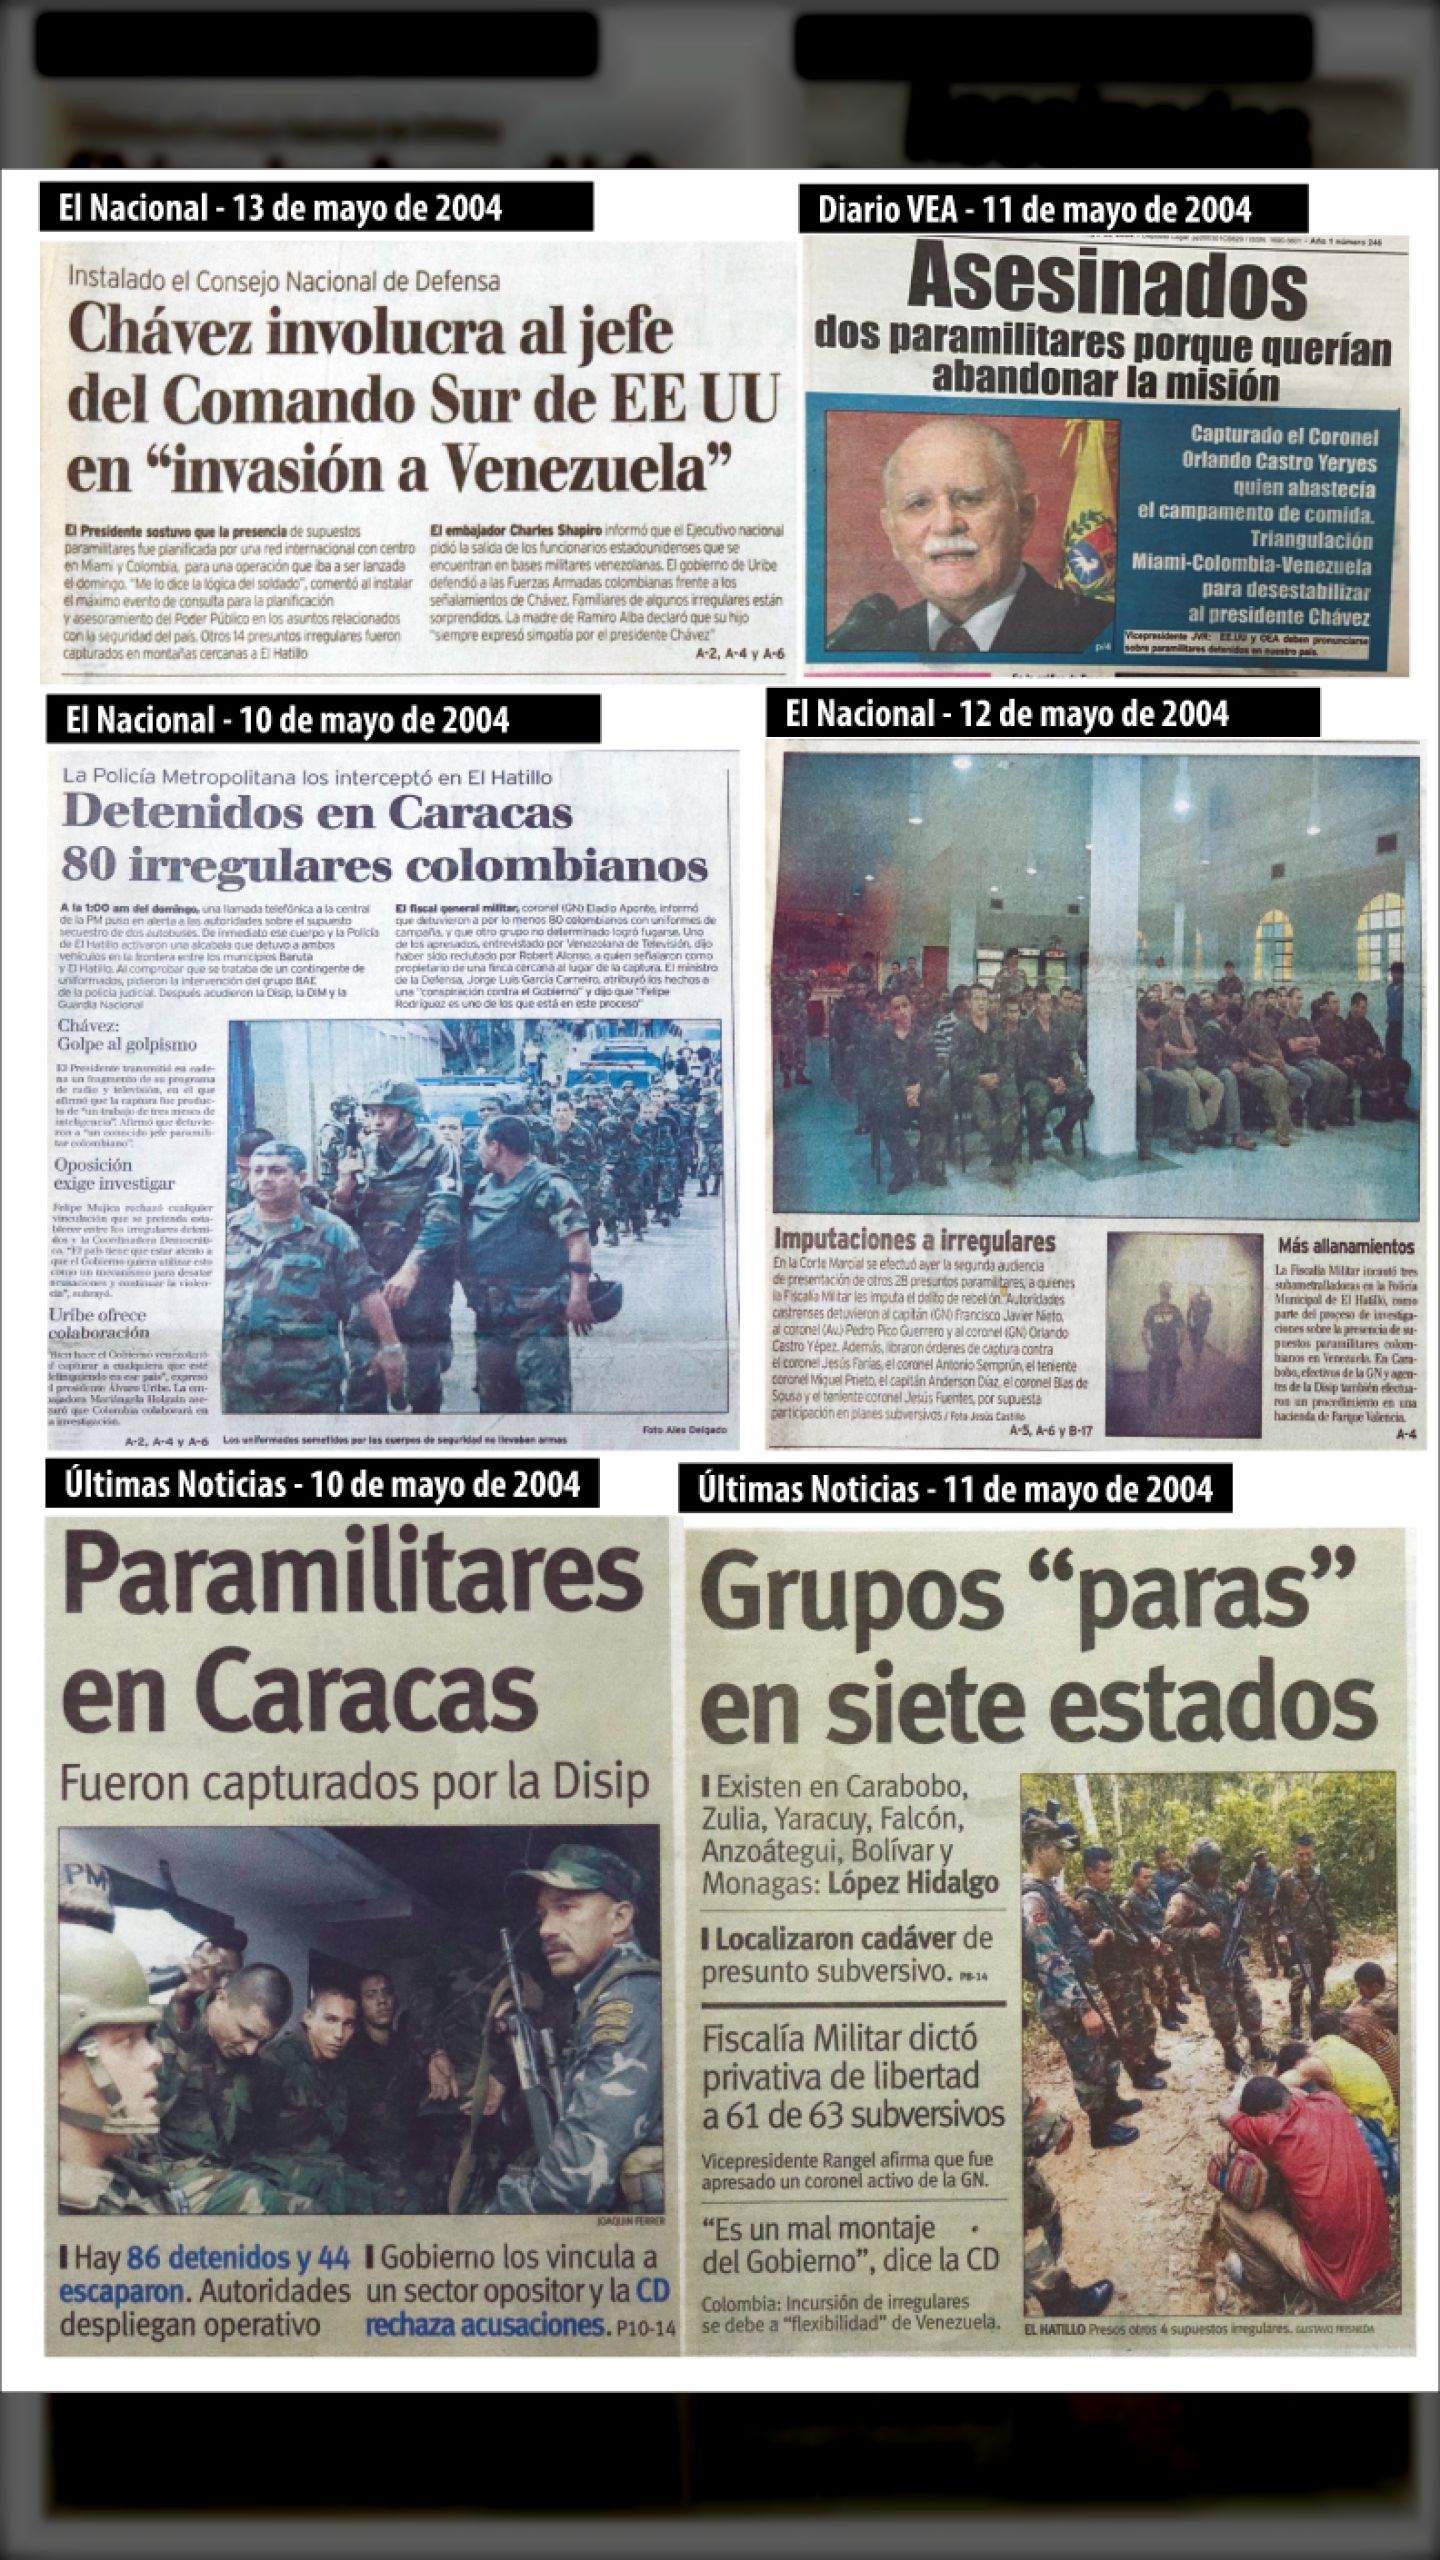 OPERACIÓN DAKTARI - INVASIÓN PARAMILITAR A VENEZUELA (El Nacional, 9 de mayo 2004)